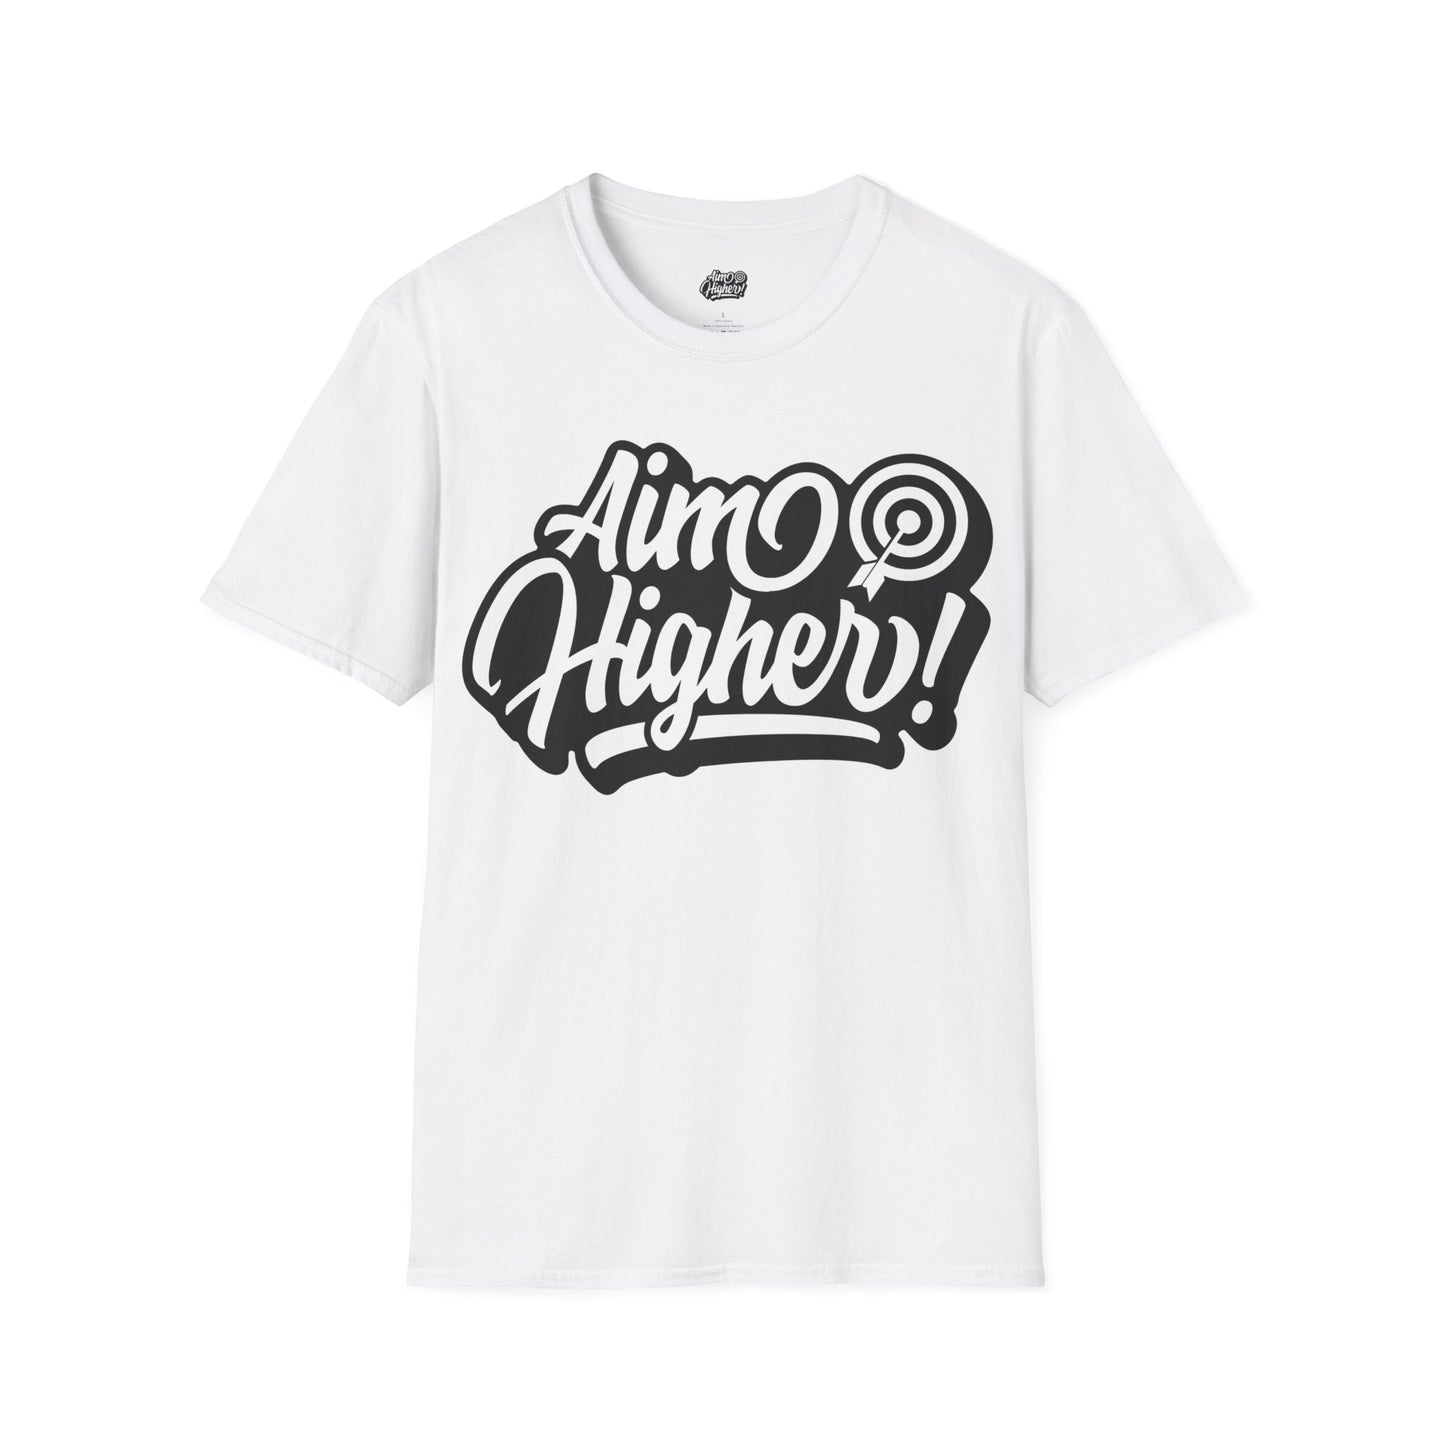 Aim Higher T-Shirt